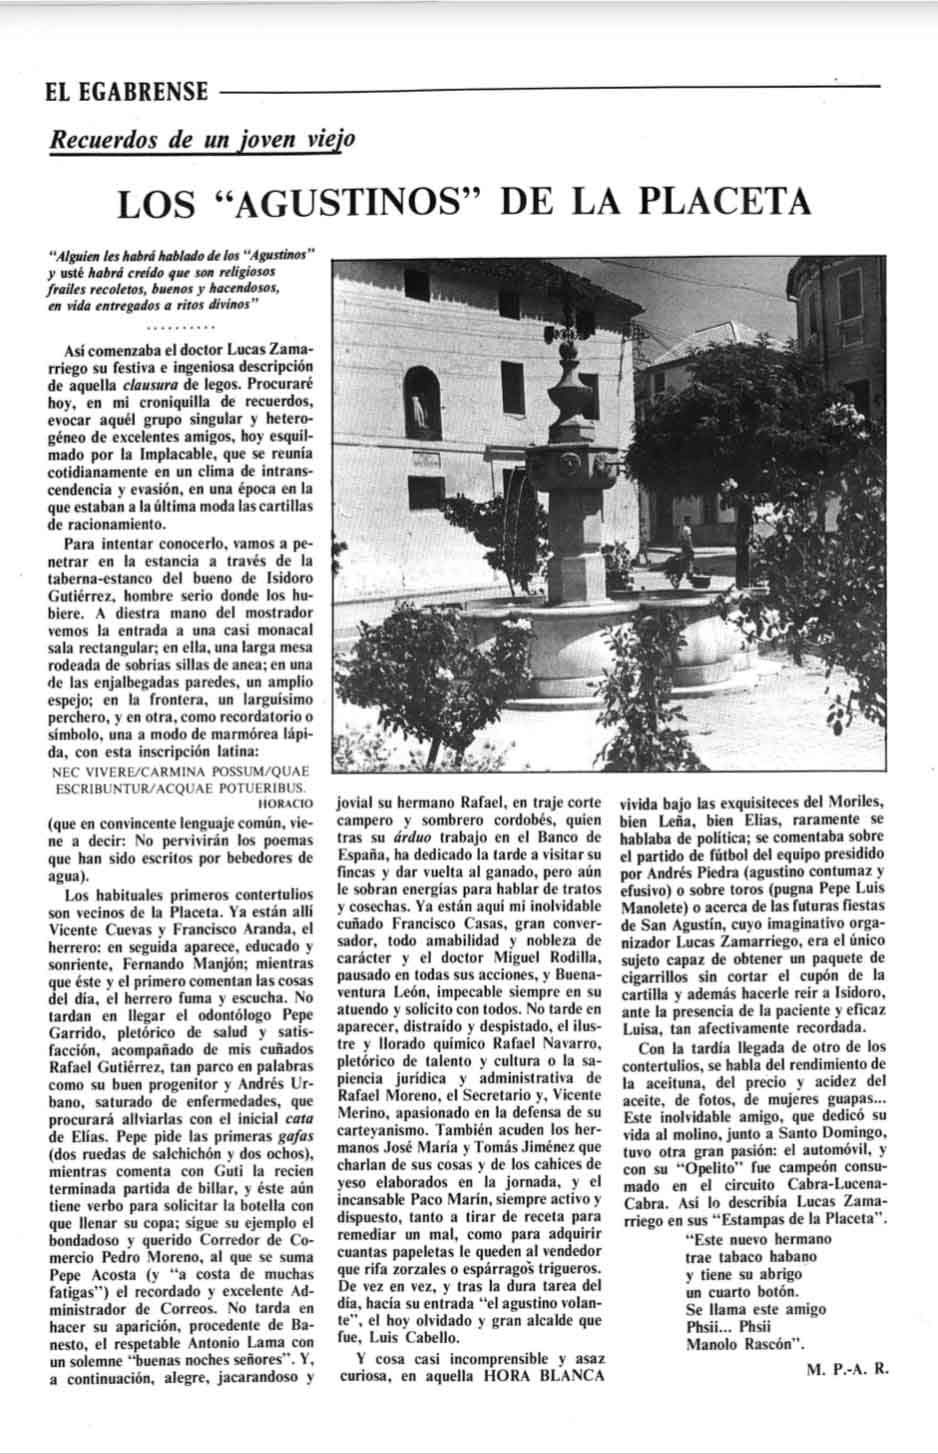 Recopilación de fotos y artículos de «El egabrense». Prensa de Cabra de Córdoba